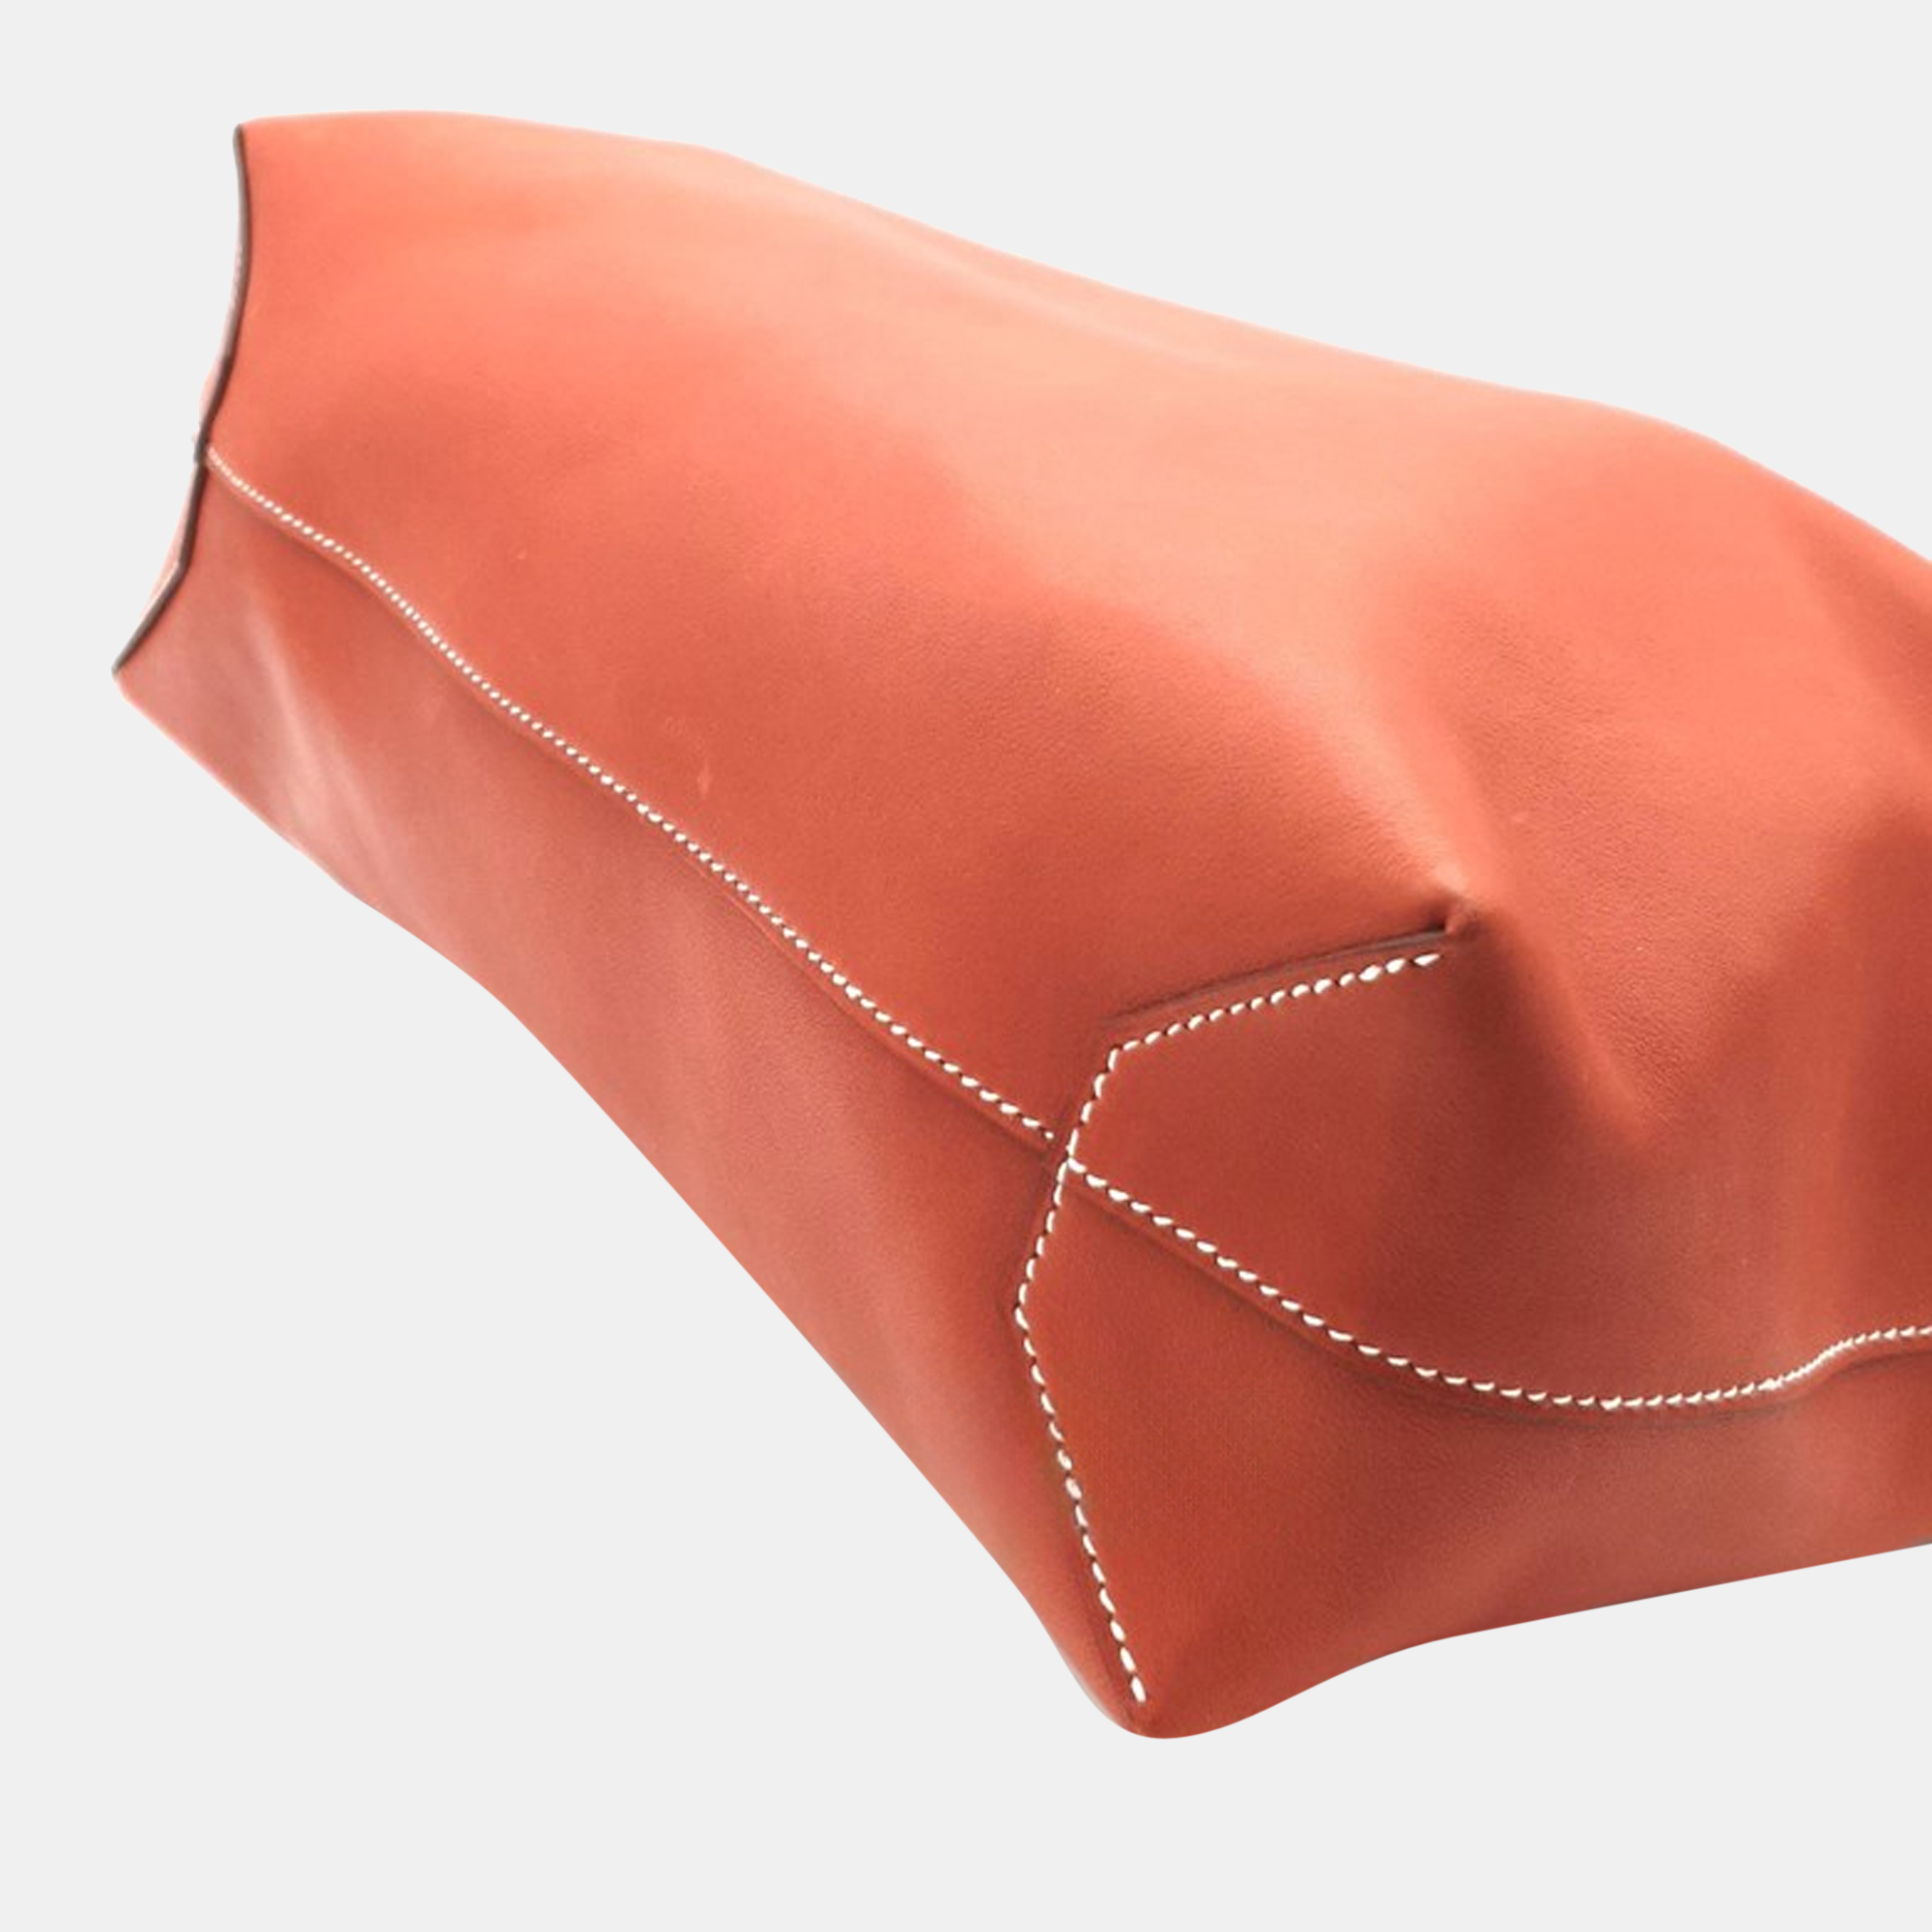 Hermes Orange Leather Cabasellier 31 Bag